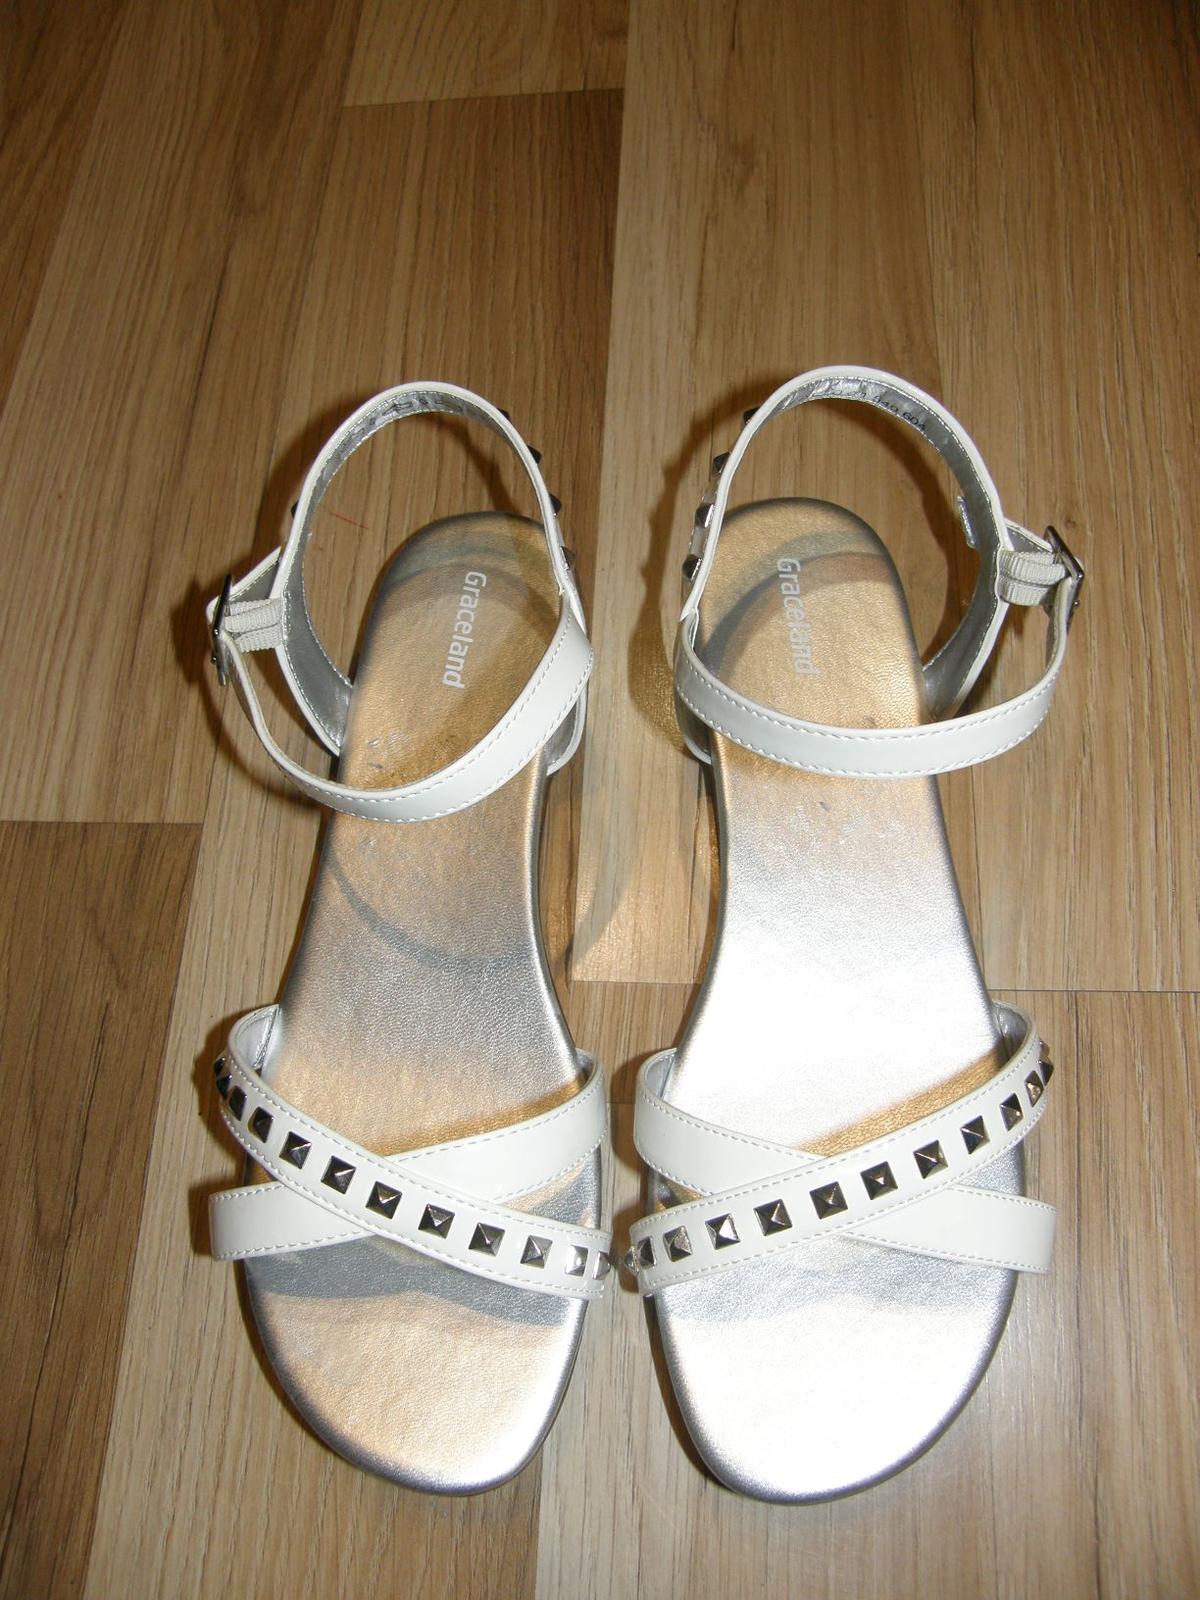 Biele sandále - Obrázok č. 1